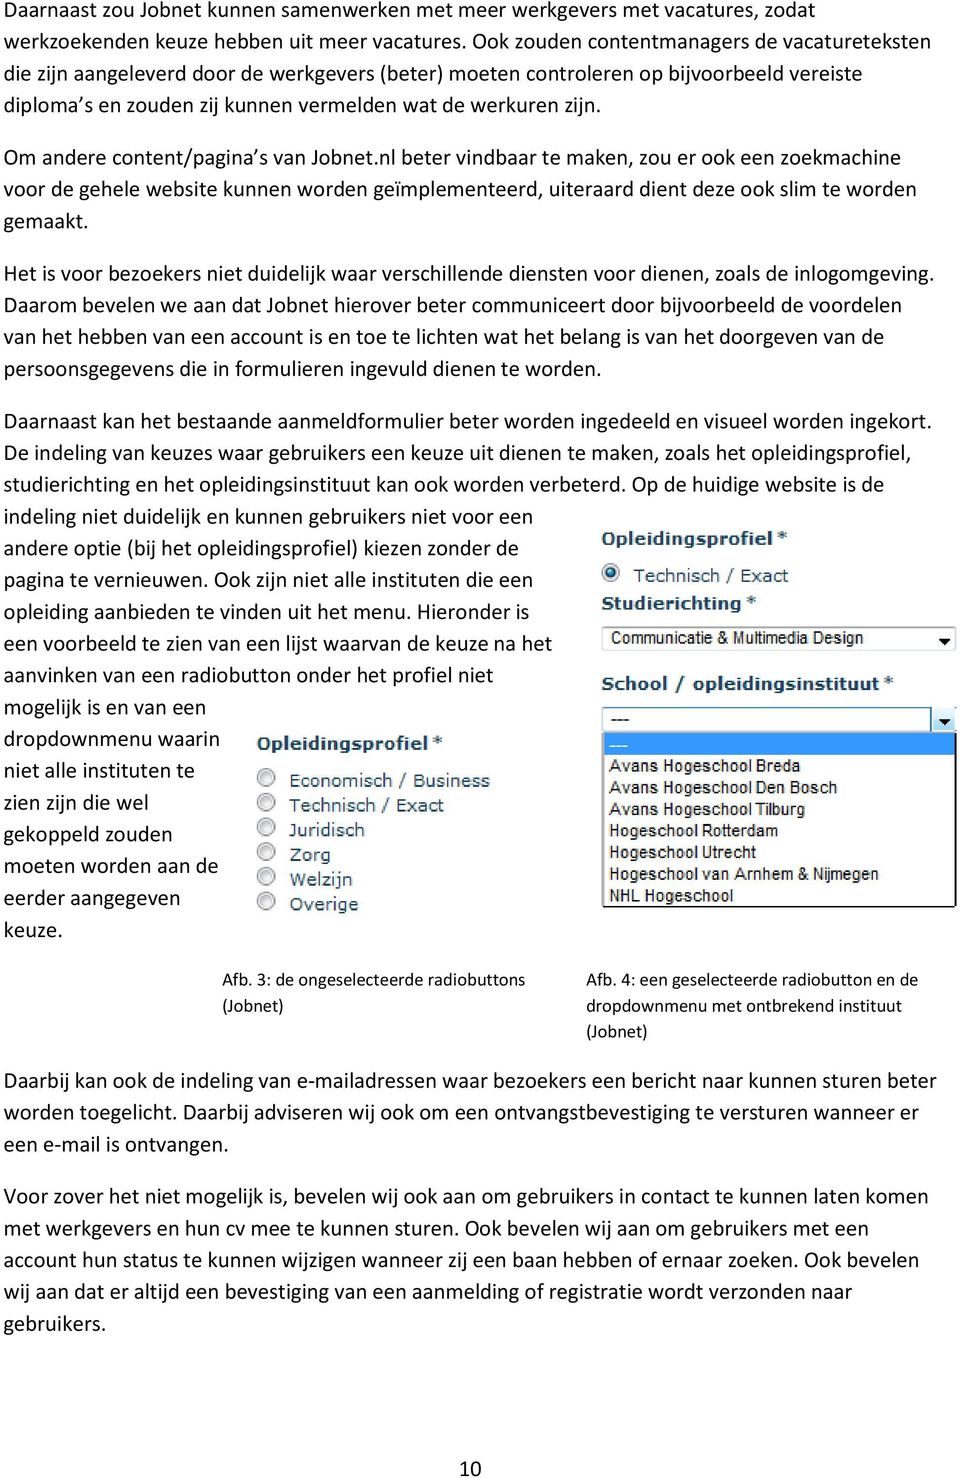 Om andere content/pagina s van Jobnet.nl beter vindbaar te maken, zou er ook een zoekmachine voor de gehele website kunnen worden geïmplementeerd, uiteraard dient deze ook slim te worden gemaakt.